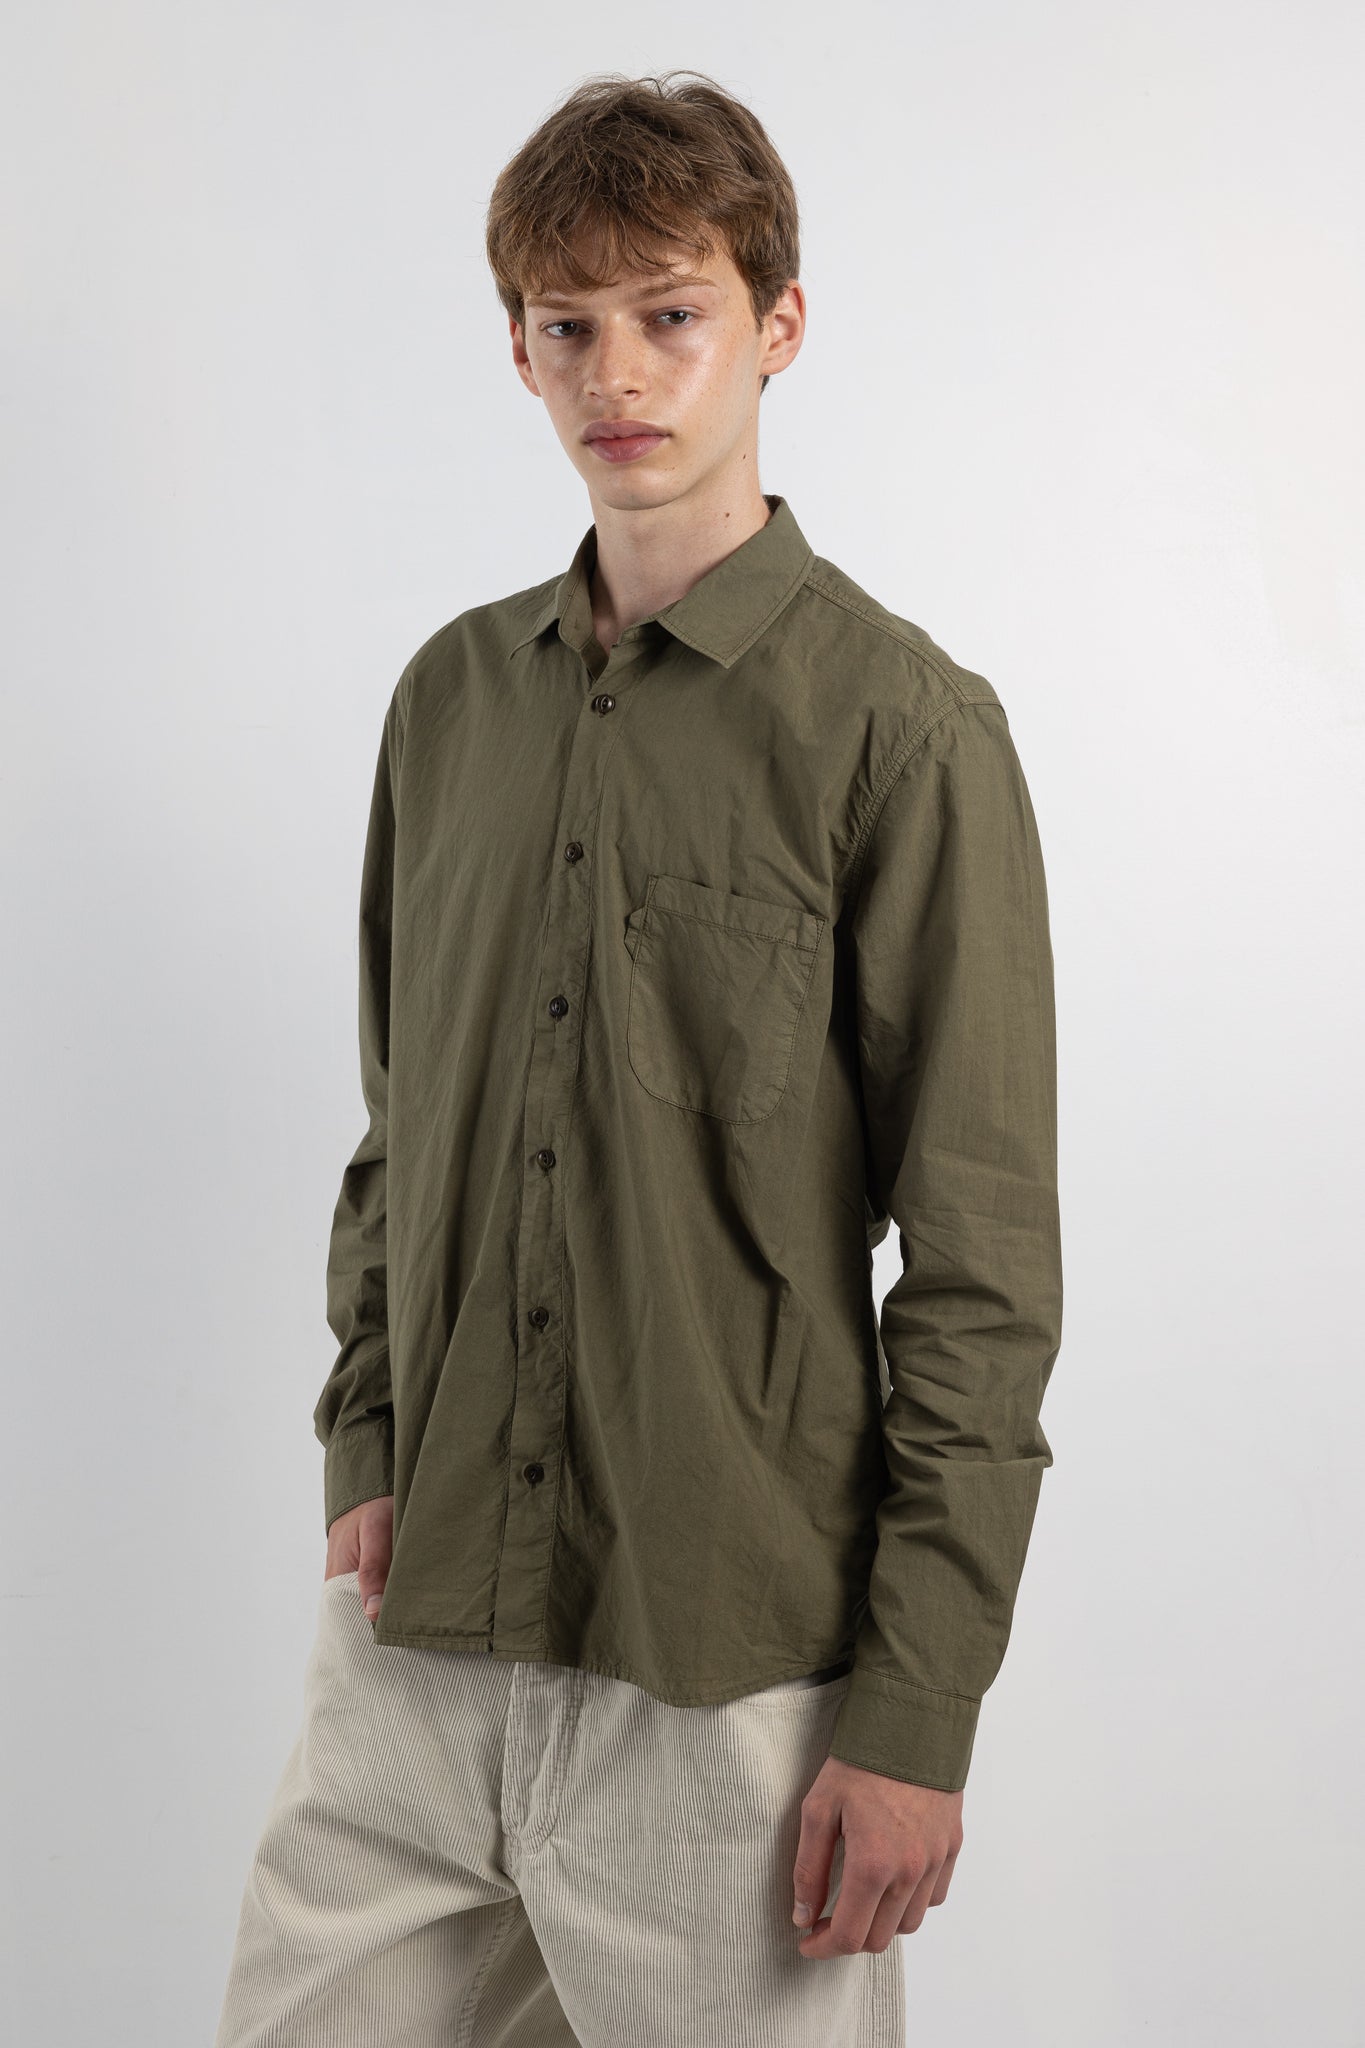 Mens shirt | YMC curtis shirt | The Standard Store